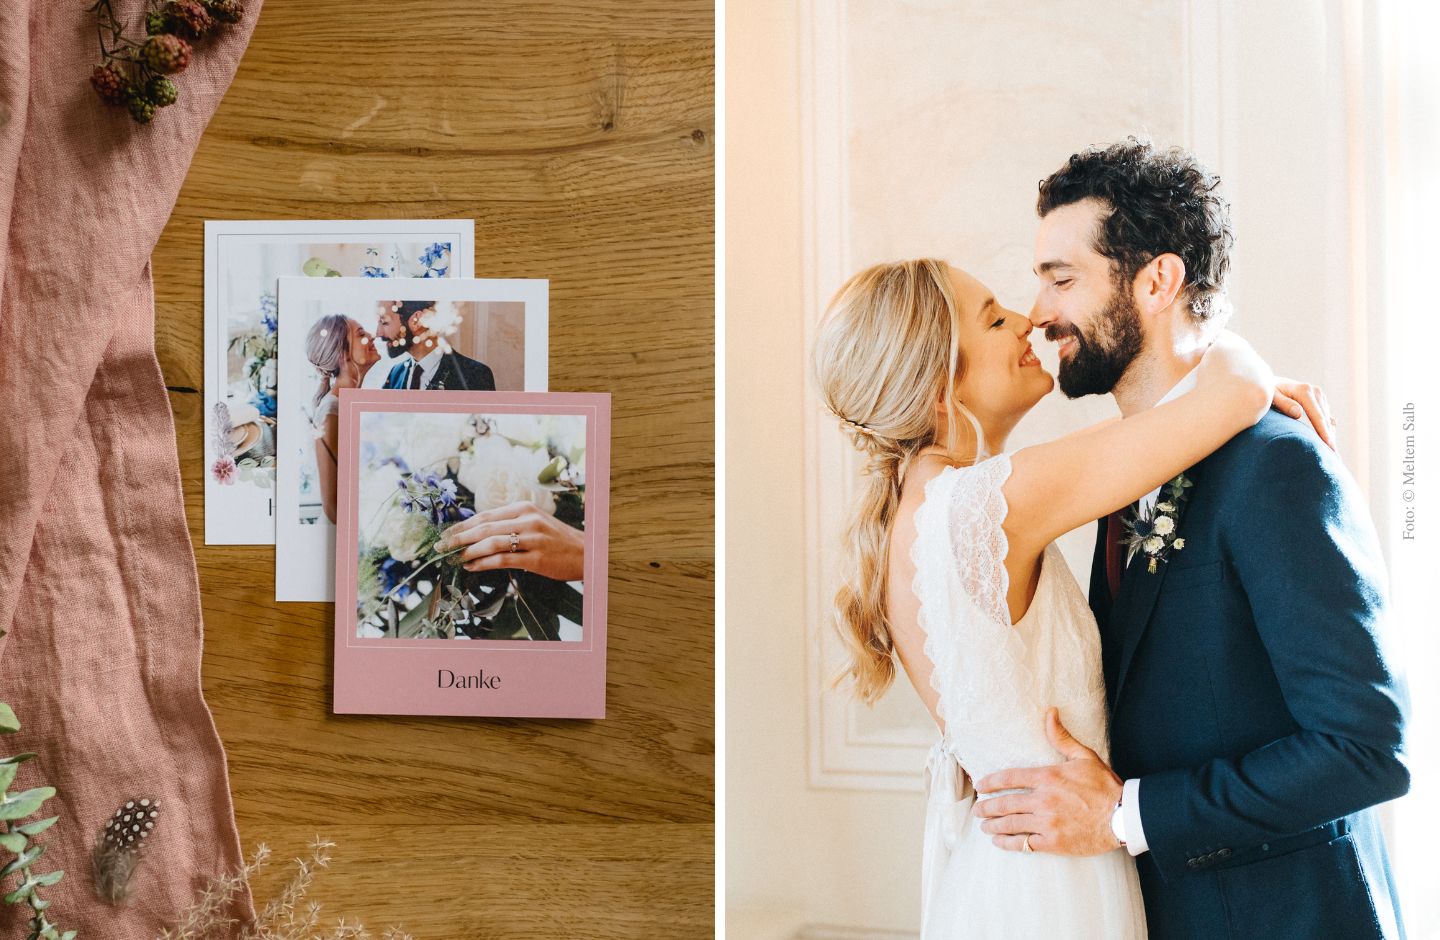 Polaroid als Dankeskarte. Hochzeitspaar, das sich küsst.